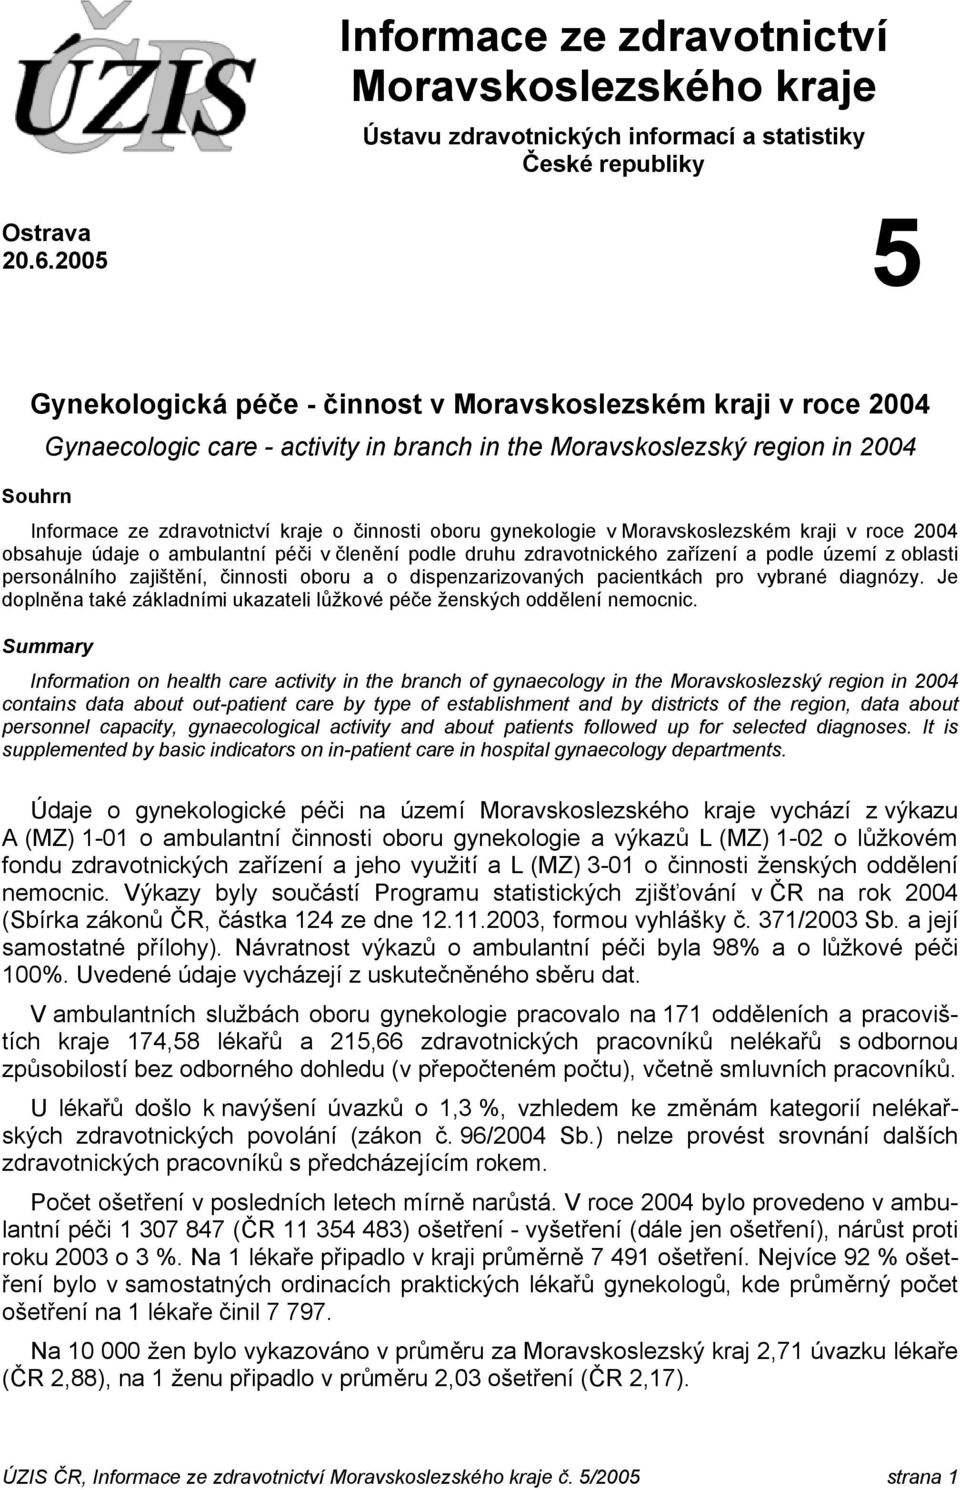 oboru gynekologie v Moravskoslezském kraji v roce 2004 obsahuje údaje o ambulantní péči v členění podle druhu zdravotnického zařízení a podle území z oblasti personálního zajištění, činnosti oboru a